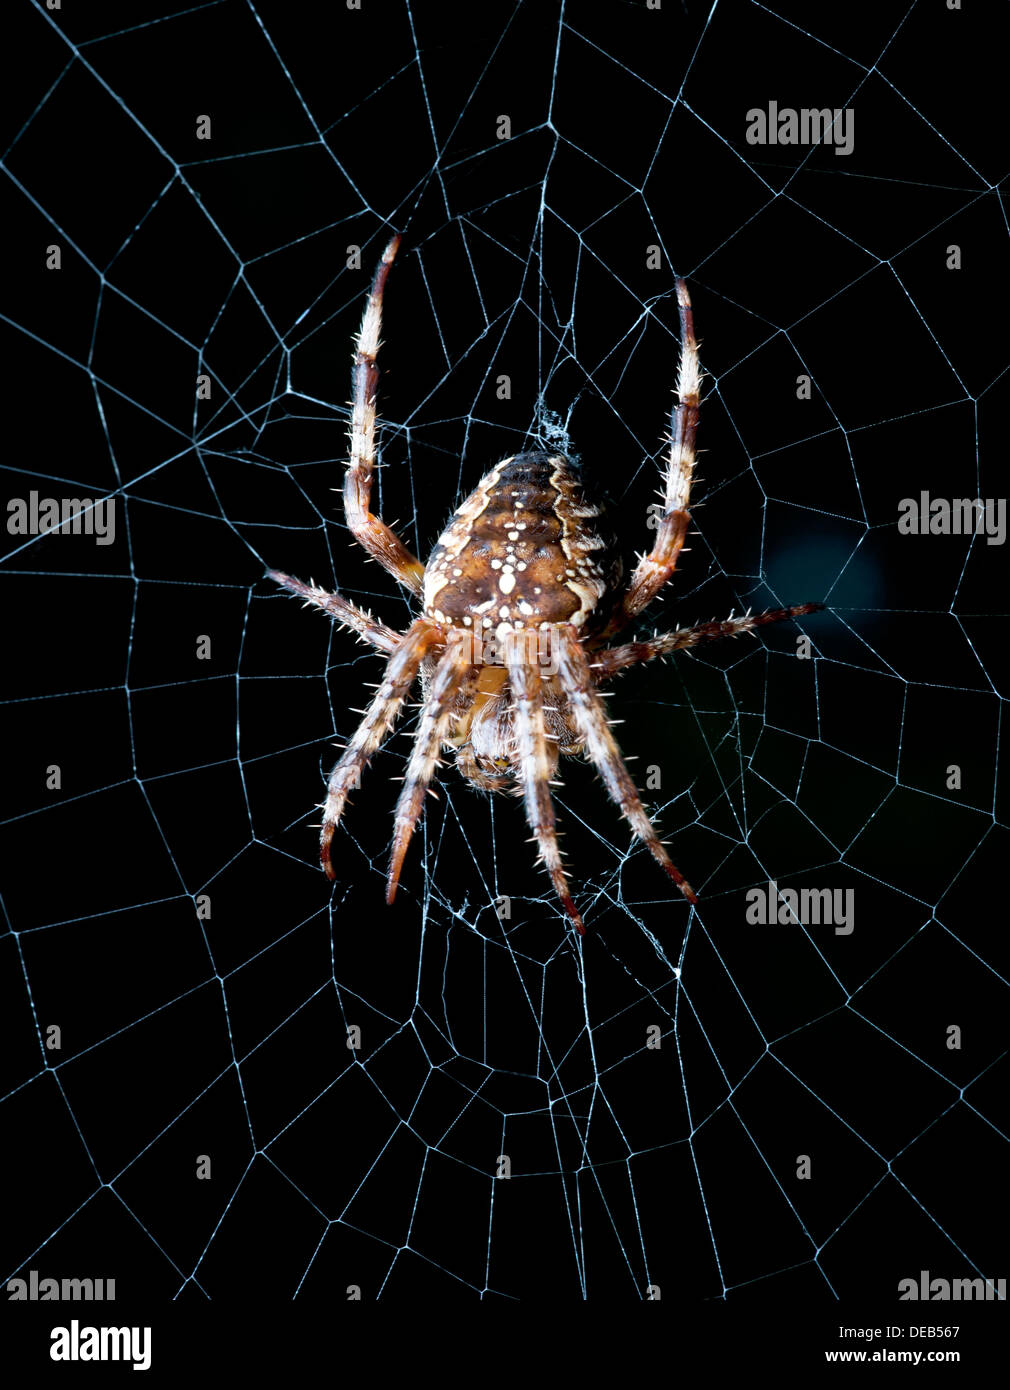 Spinne - Orb Weaver Spinne im Netz Stockfoto